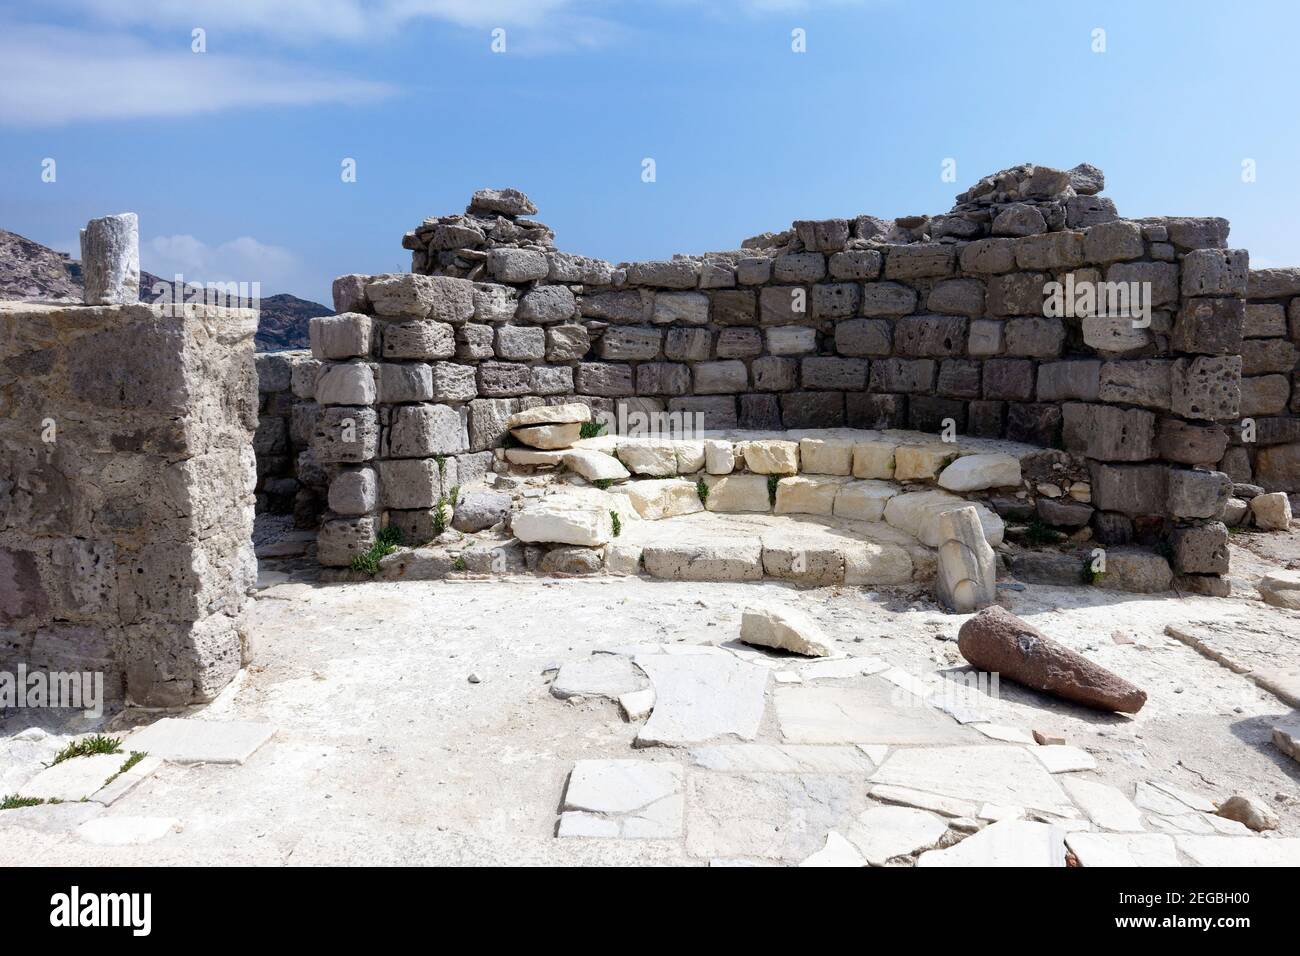 El ábside semicircular de la Basílica griega de Agios Stefanos en Kefalos, Kos Foto de stock